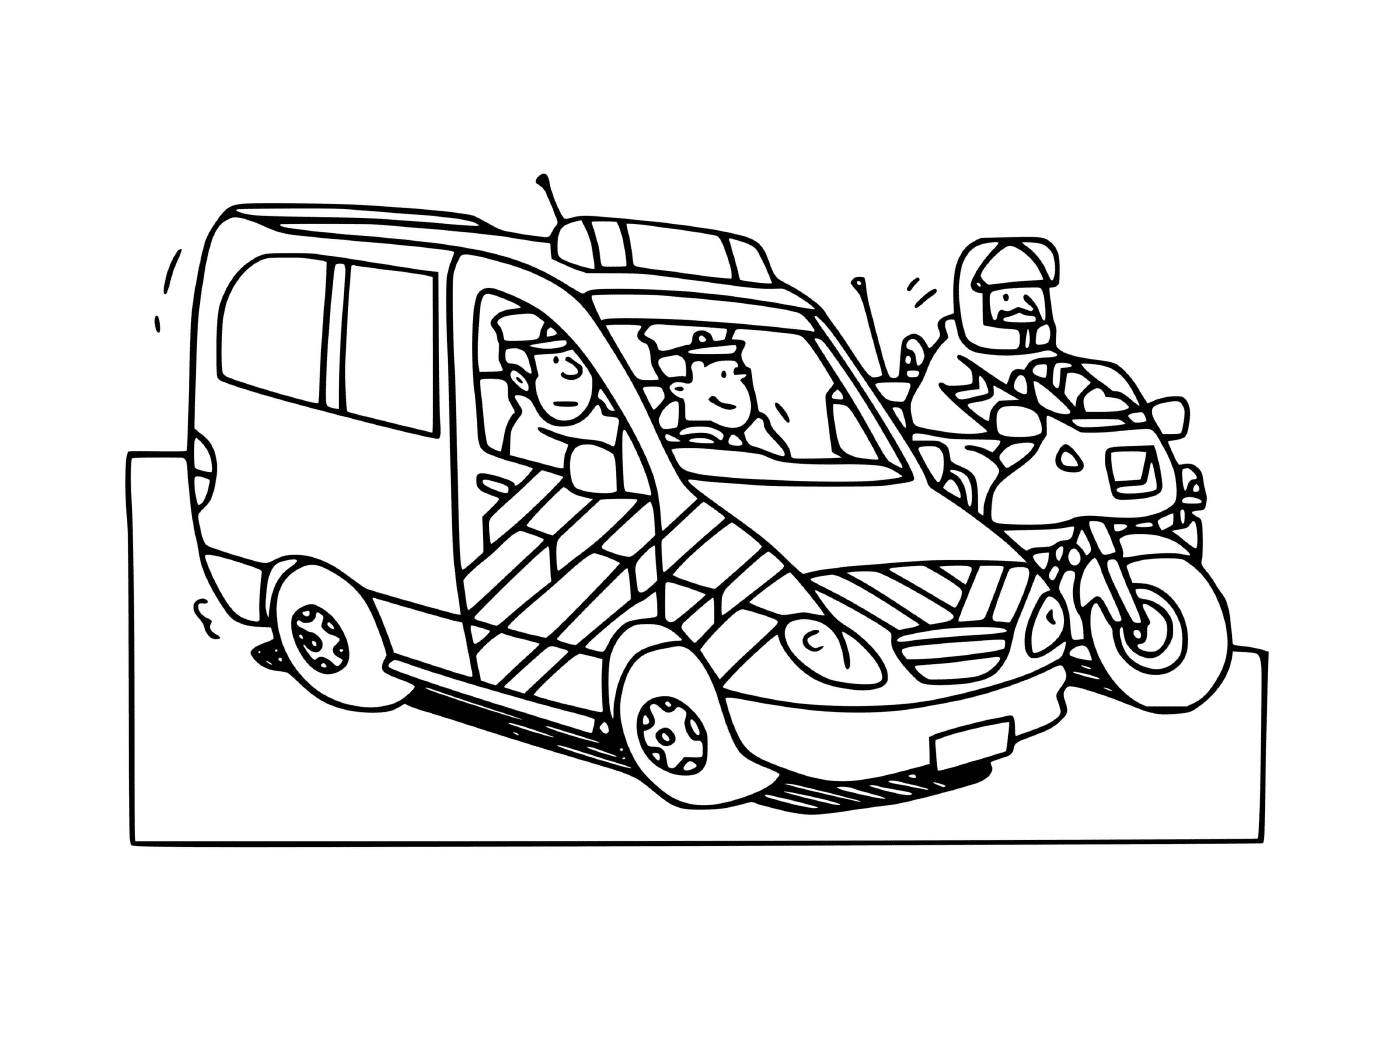  سيارة شرطة فرنسية ذات دراجات شرطة 